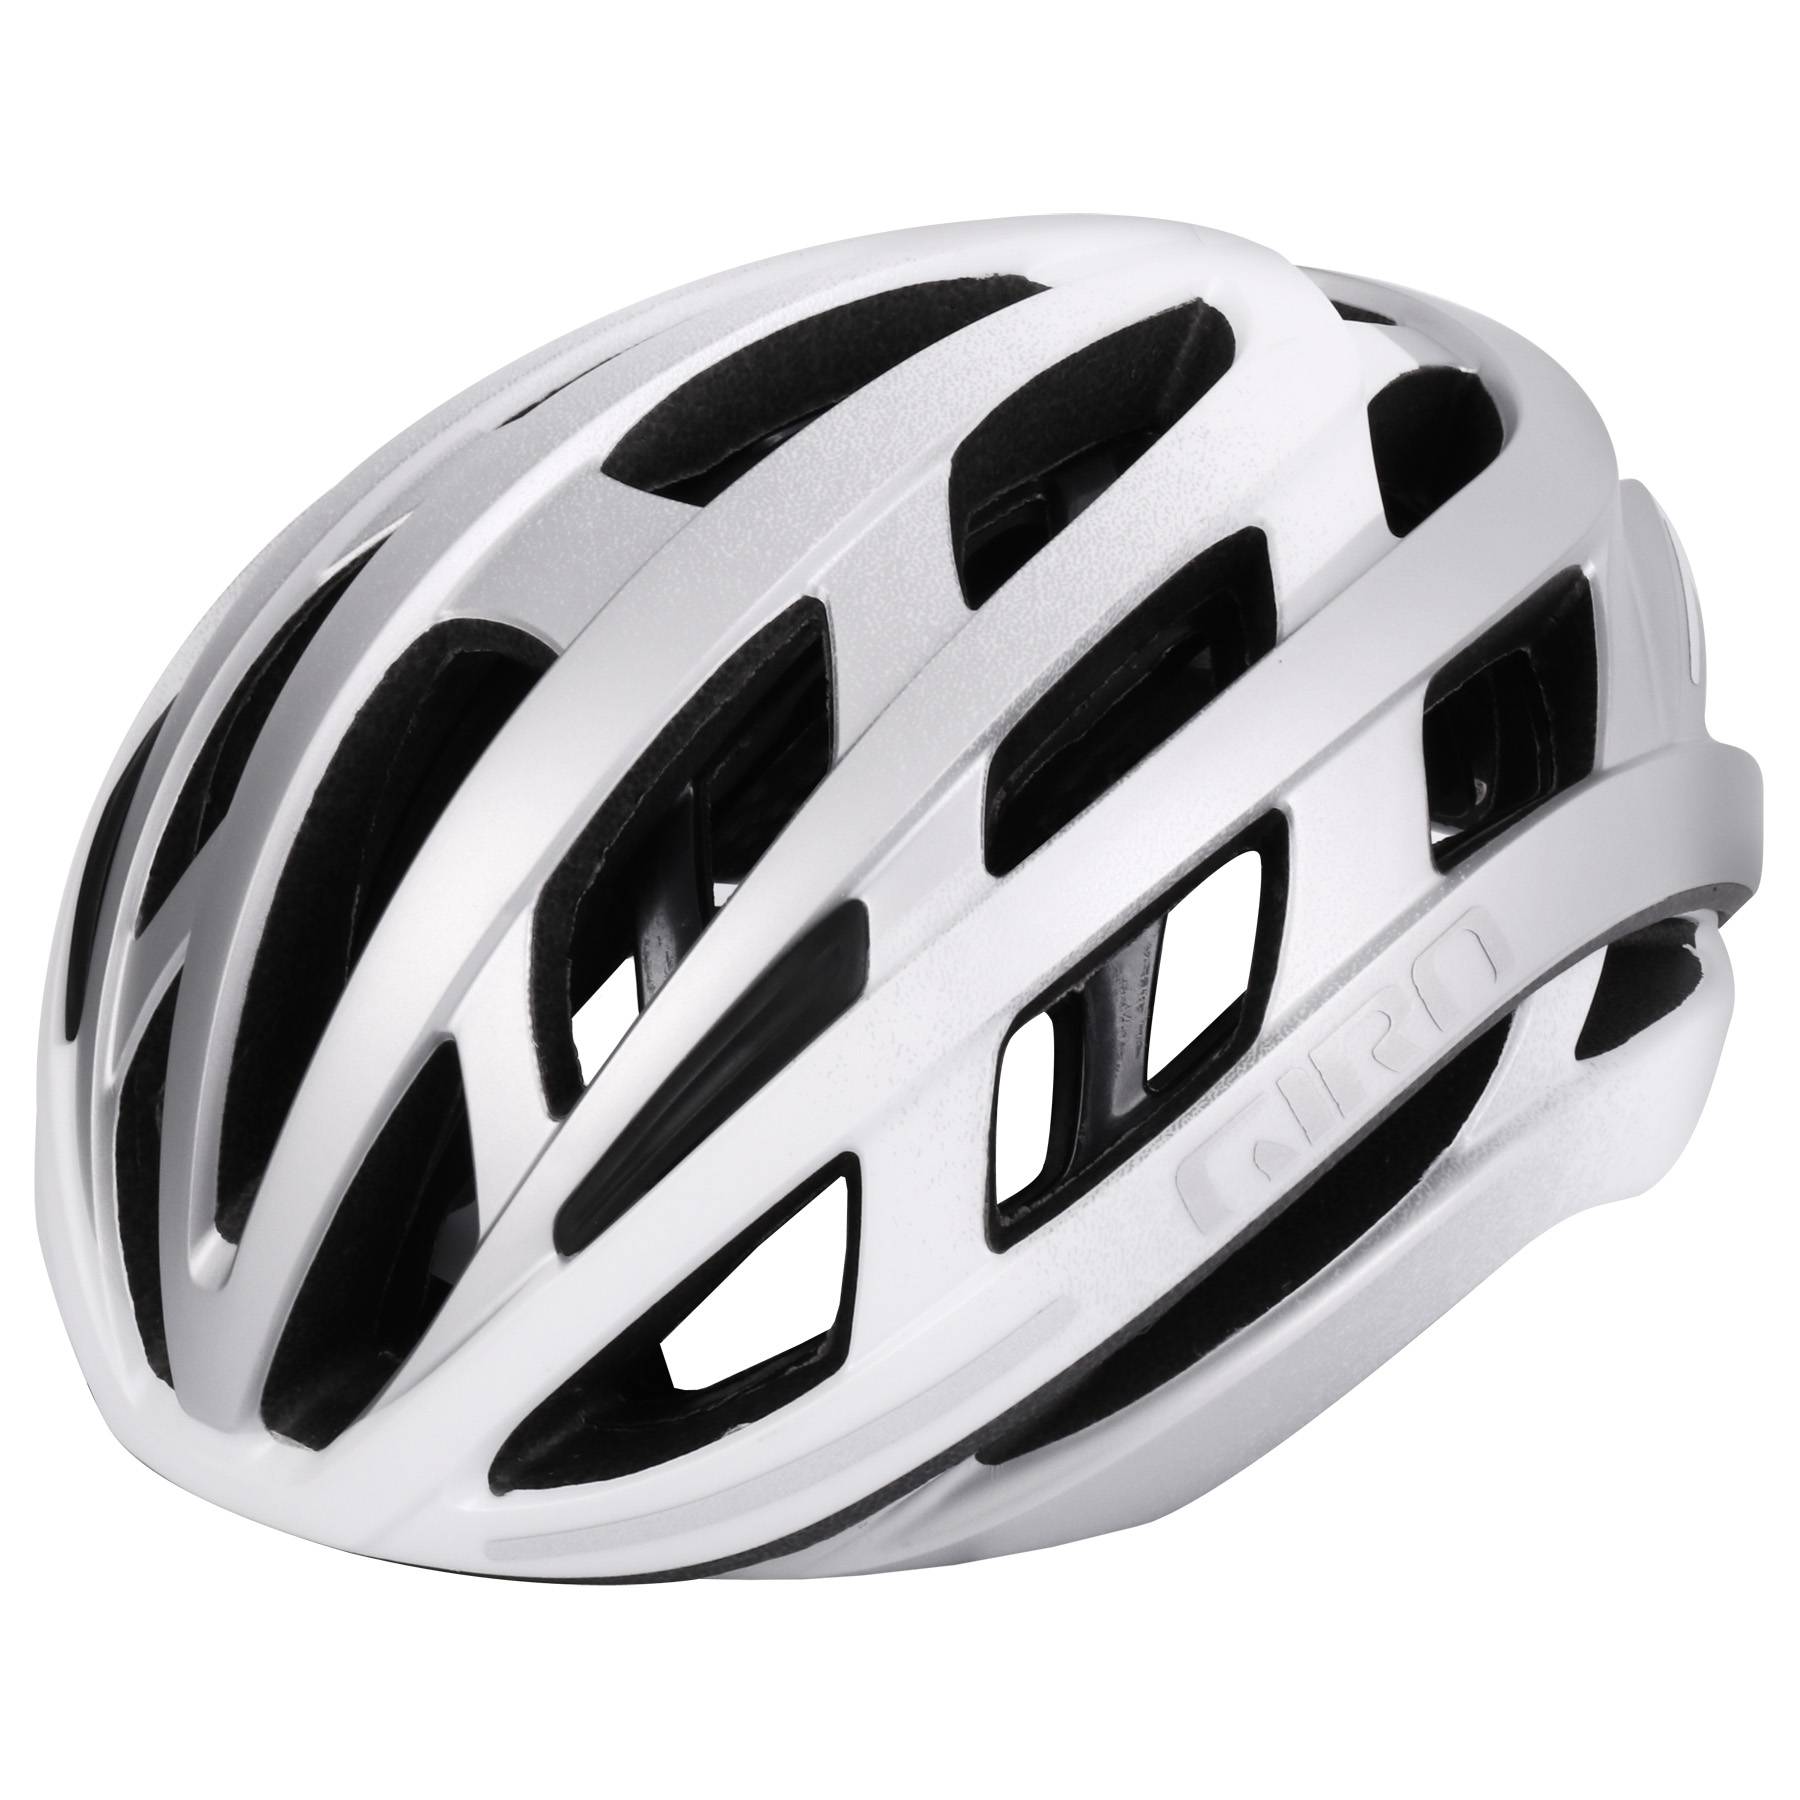 Produktbild von Giro Helios Spherical MIPS Helm - matte white / silver fade